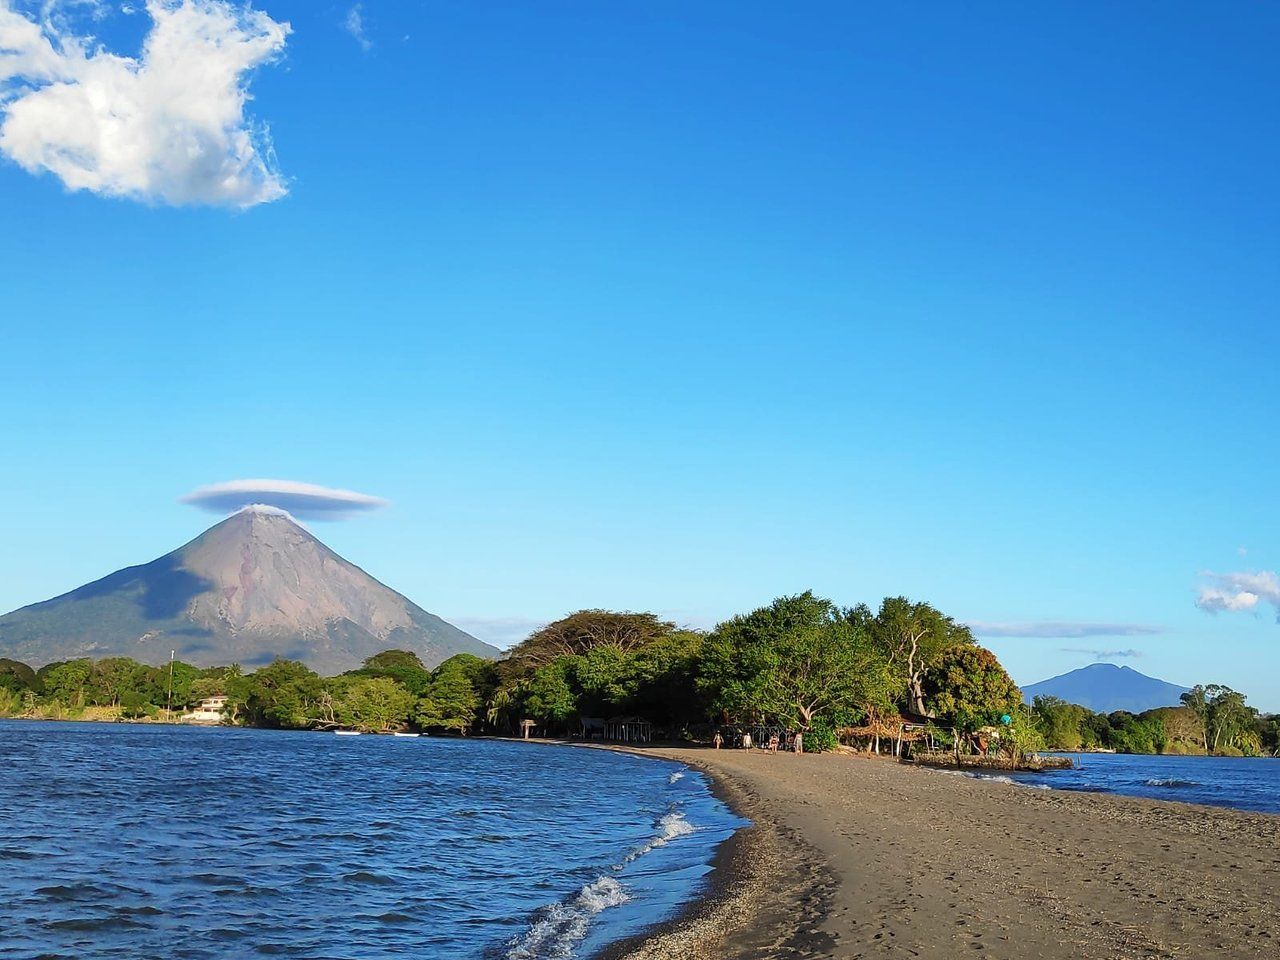 Découvrez la beauté cachée de Punta Jesus Maria au Nicaragua.